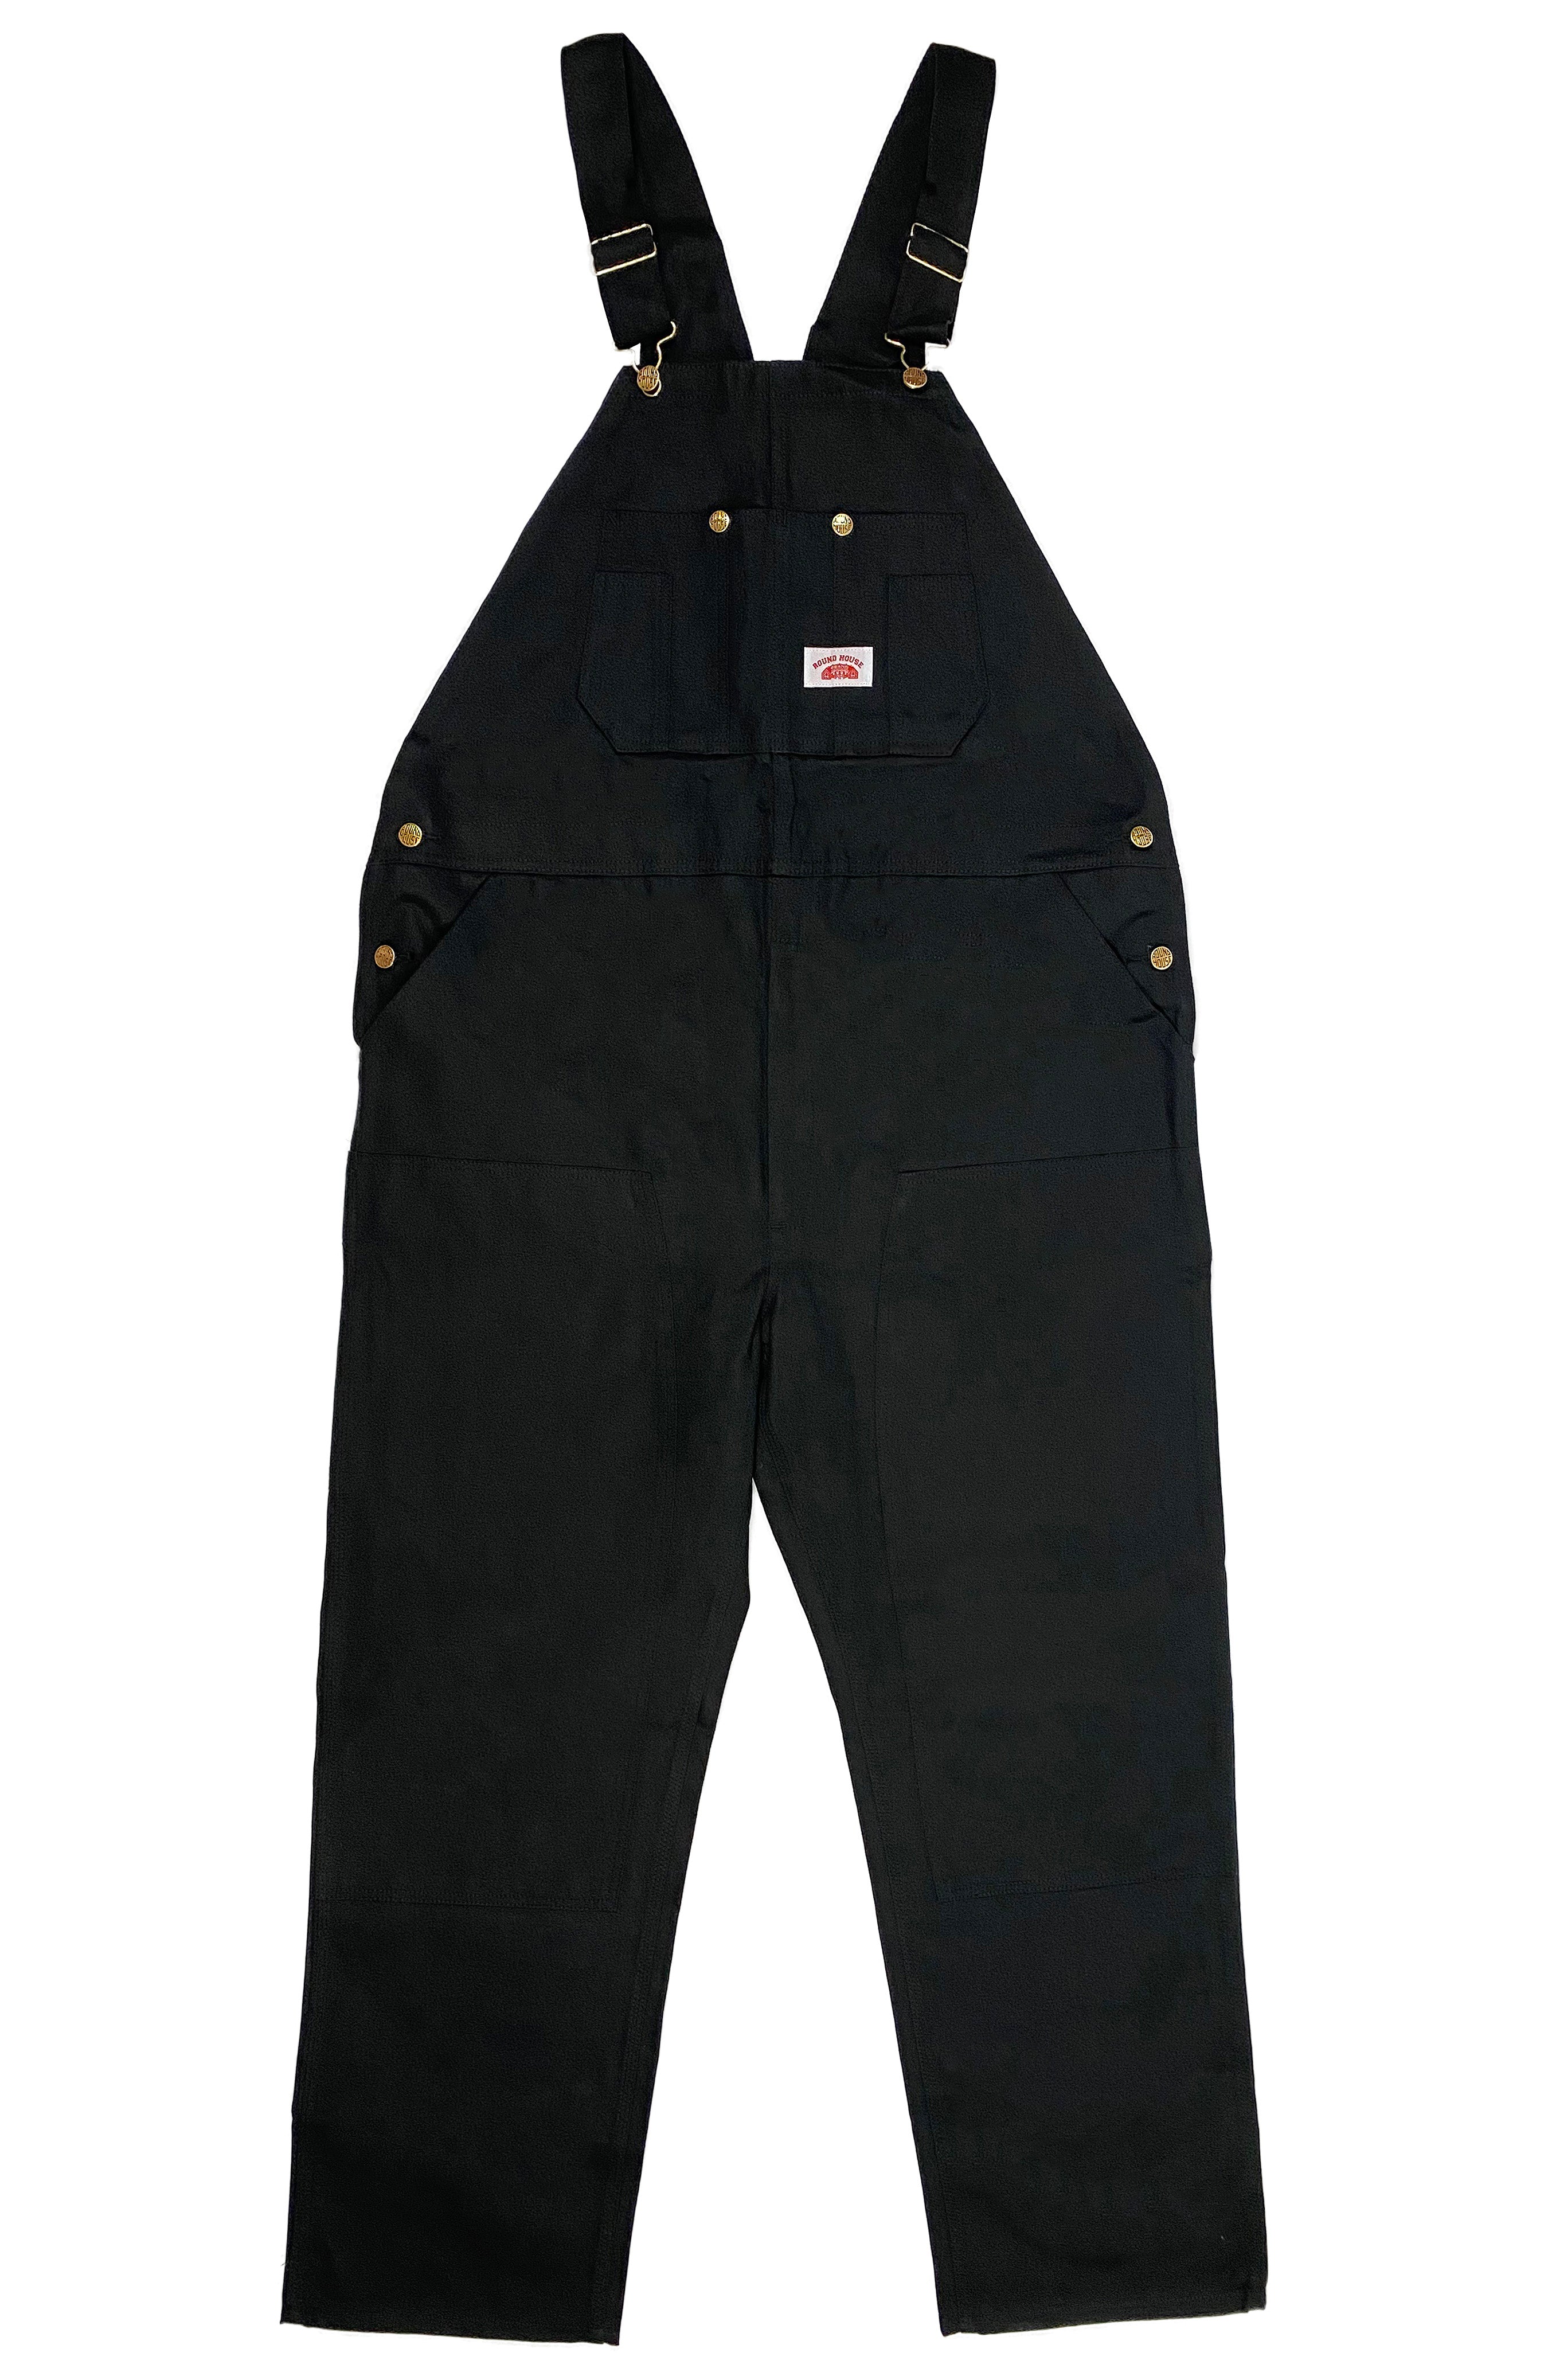 966/#980 Round House Made in USA Blue Denim Bib Overalls – Round House  American Made Jeans Made in USA Overalls, Workwear